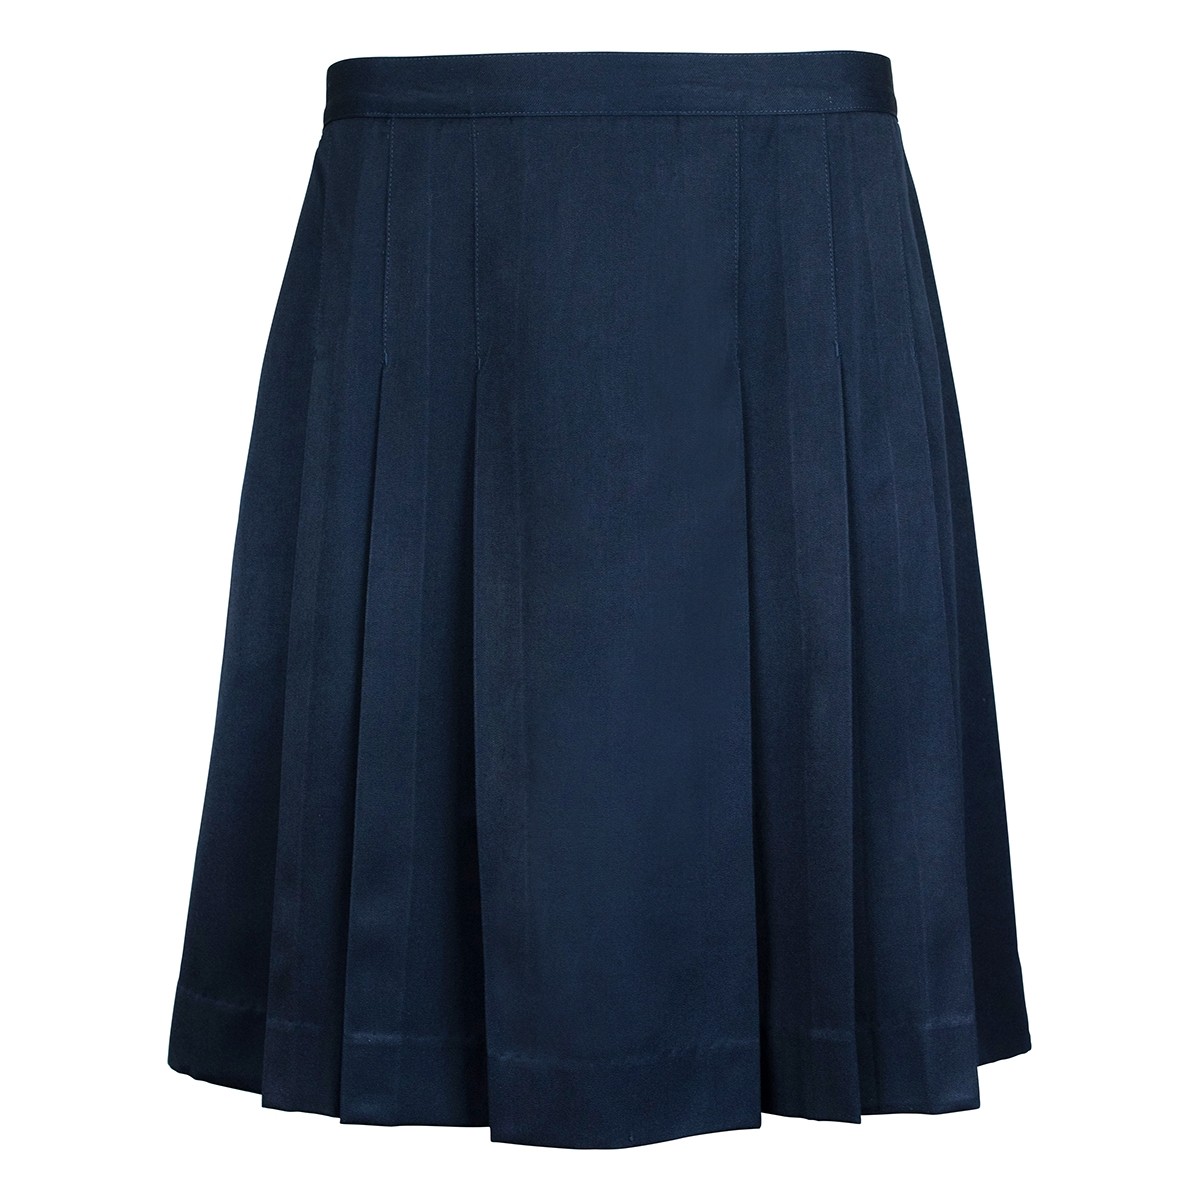 Skirt Middle/Senior - School Locker